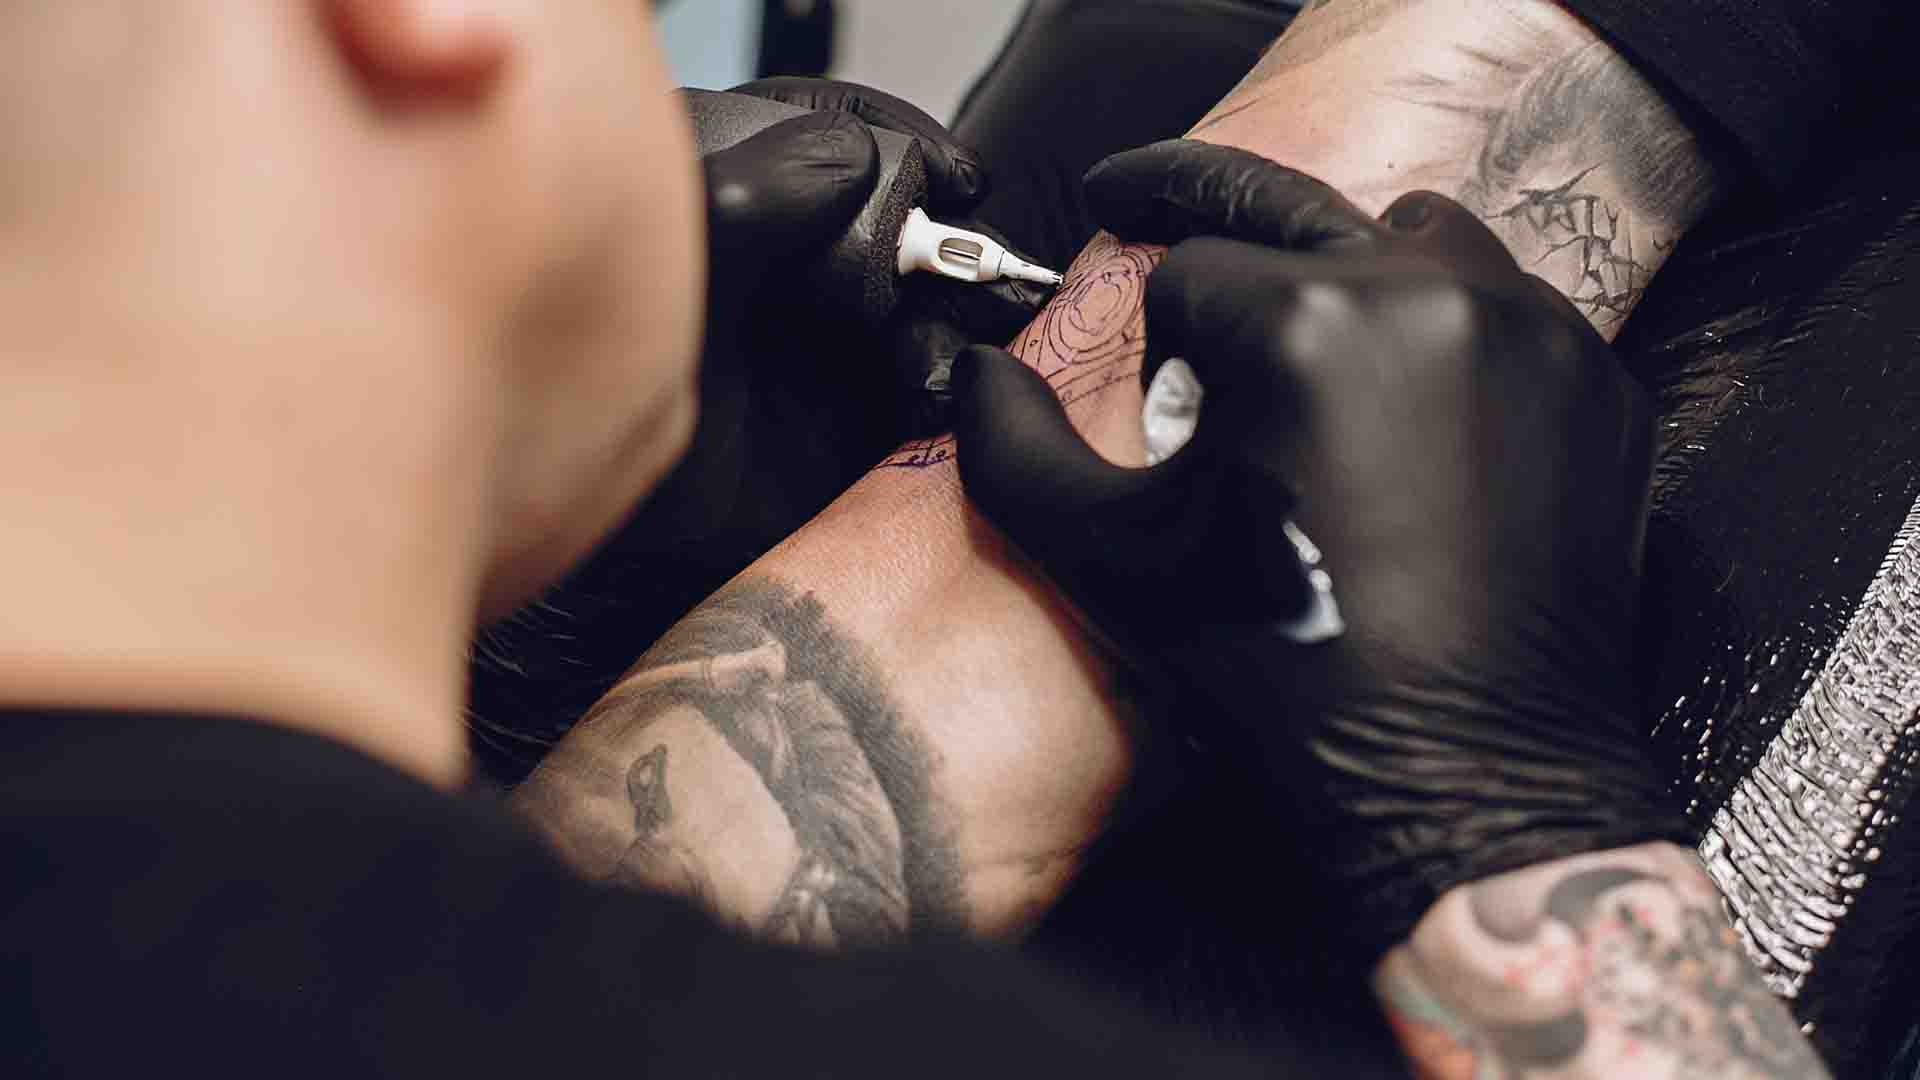 L'hépatite B peut s'attraper lors d'un tatouage dans des conditions d'hygiène douteuses